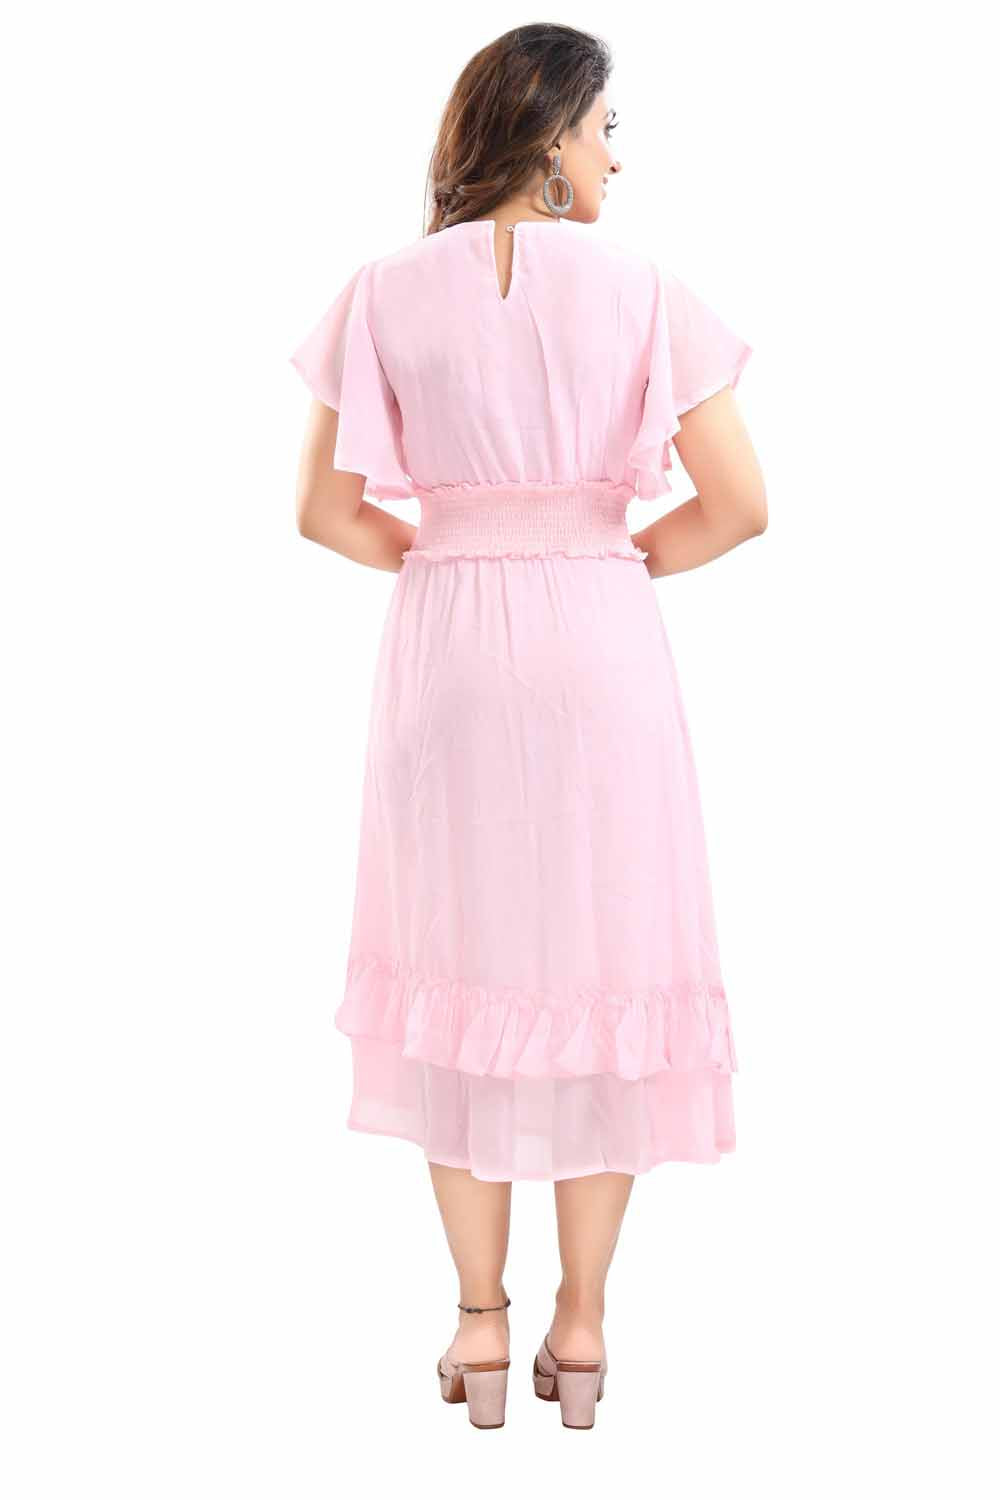 Baby girl dress | Dresses kids girl, Kids gown design, Baby girl dresses  fancy